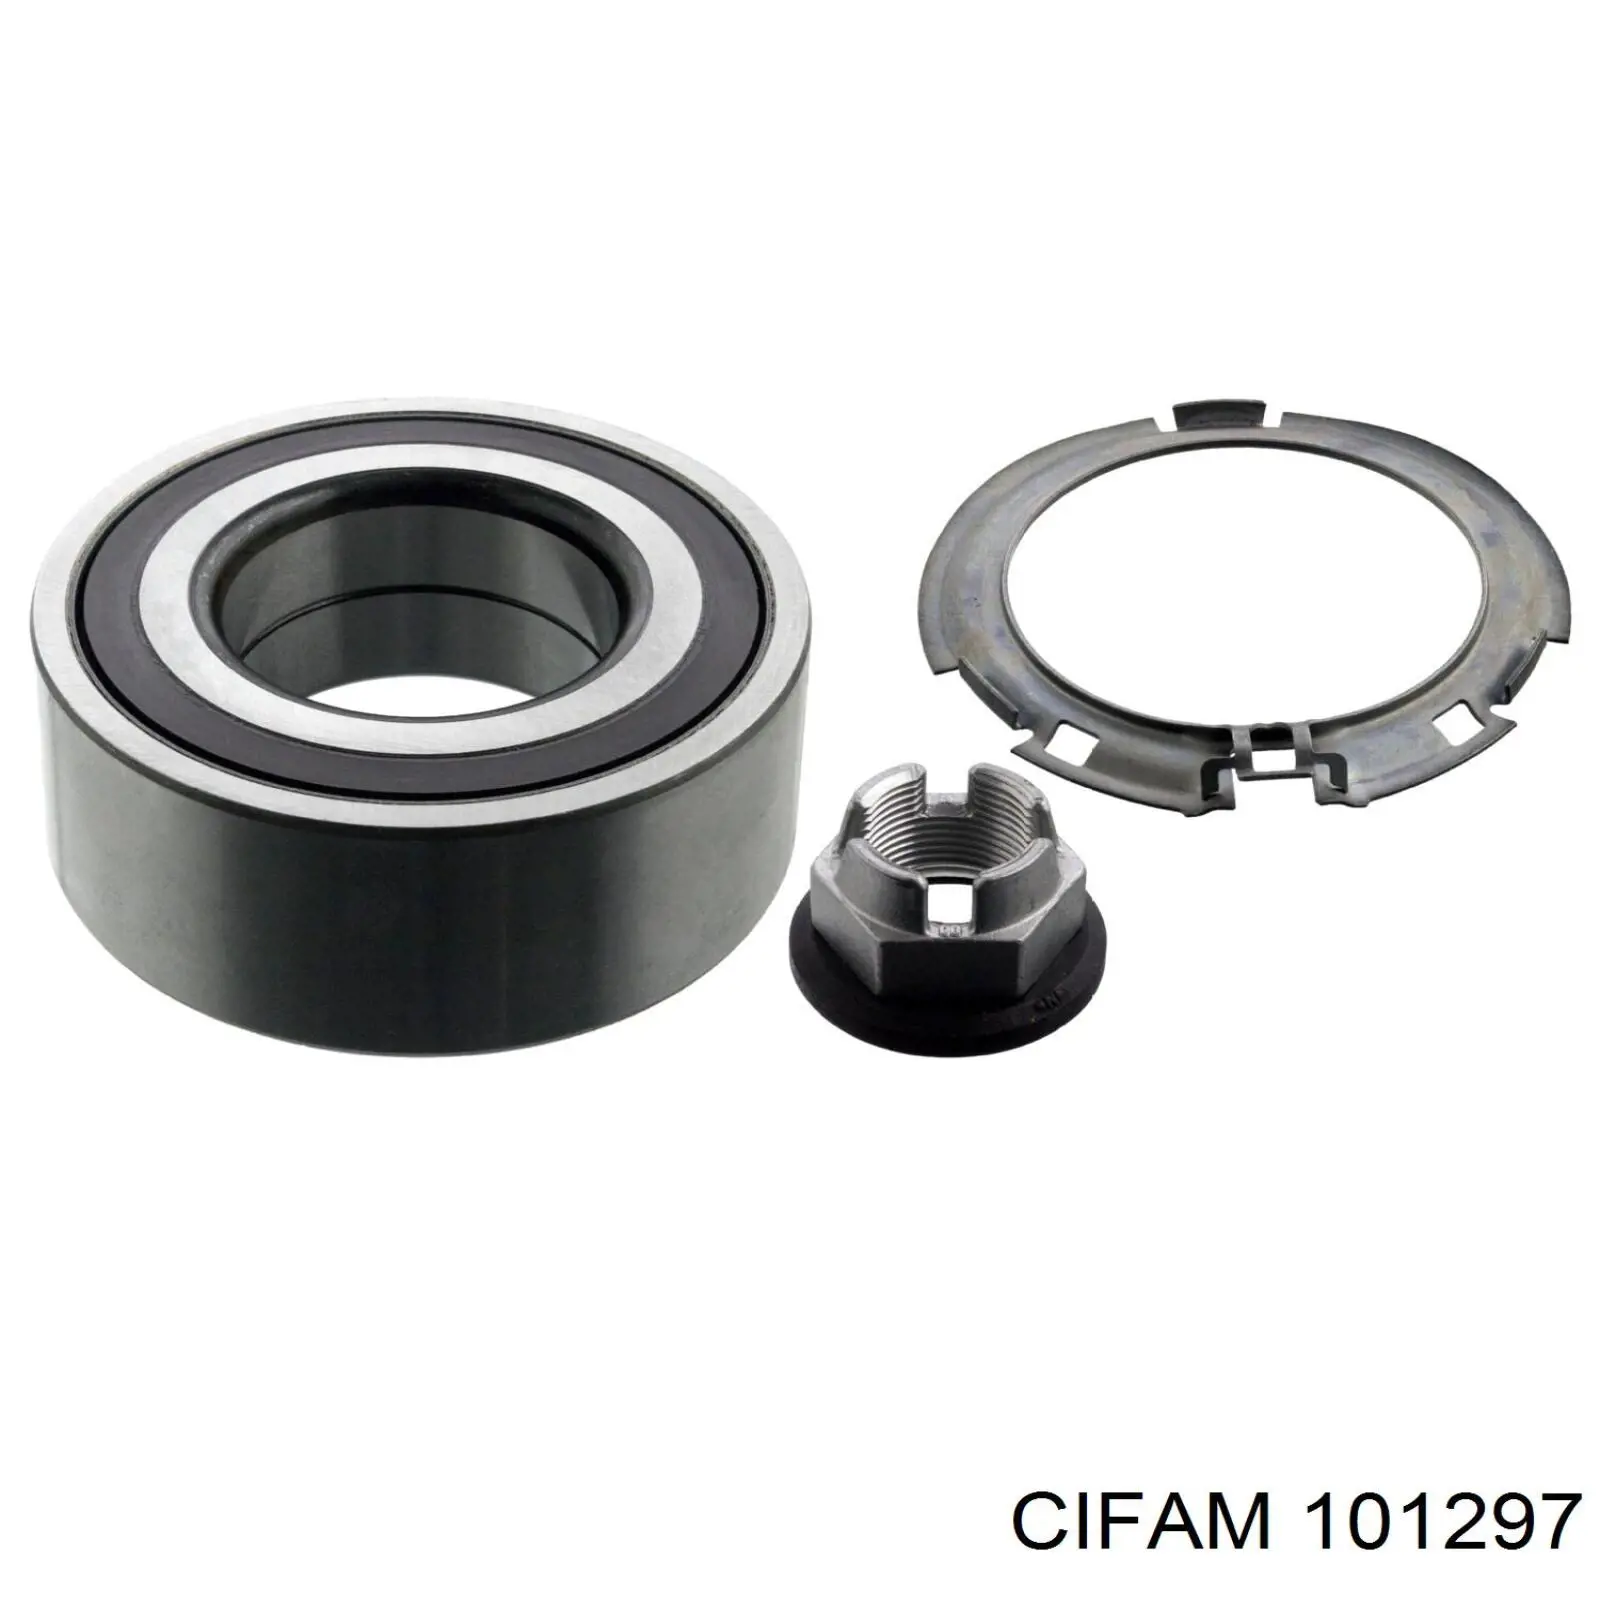 101297 Cifam цилиндр тормозной колесный рабочий задний